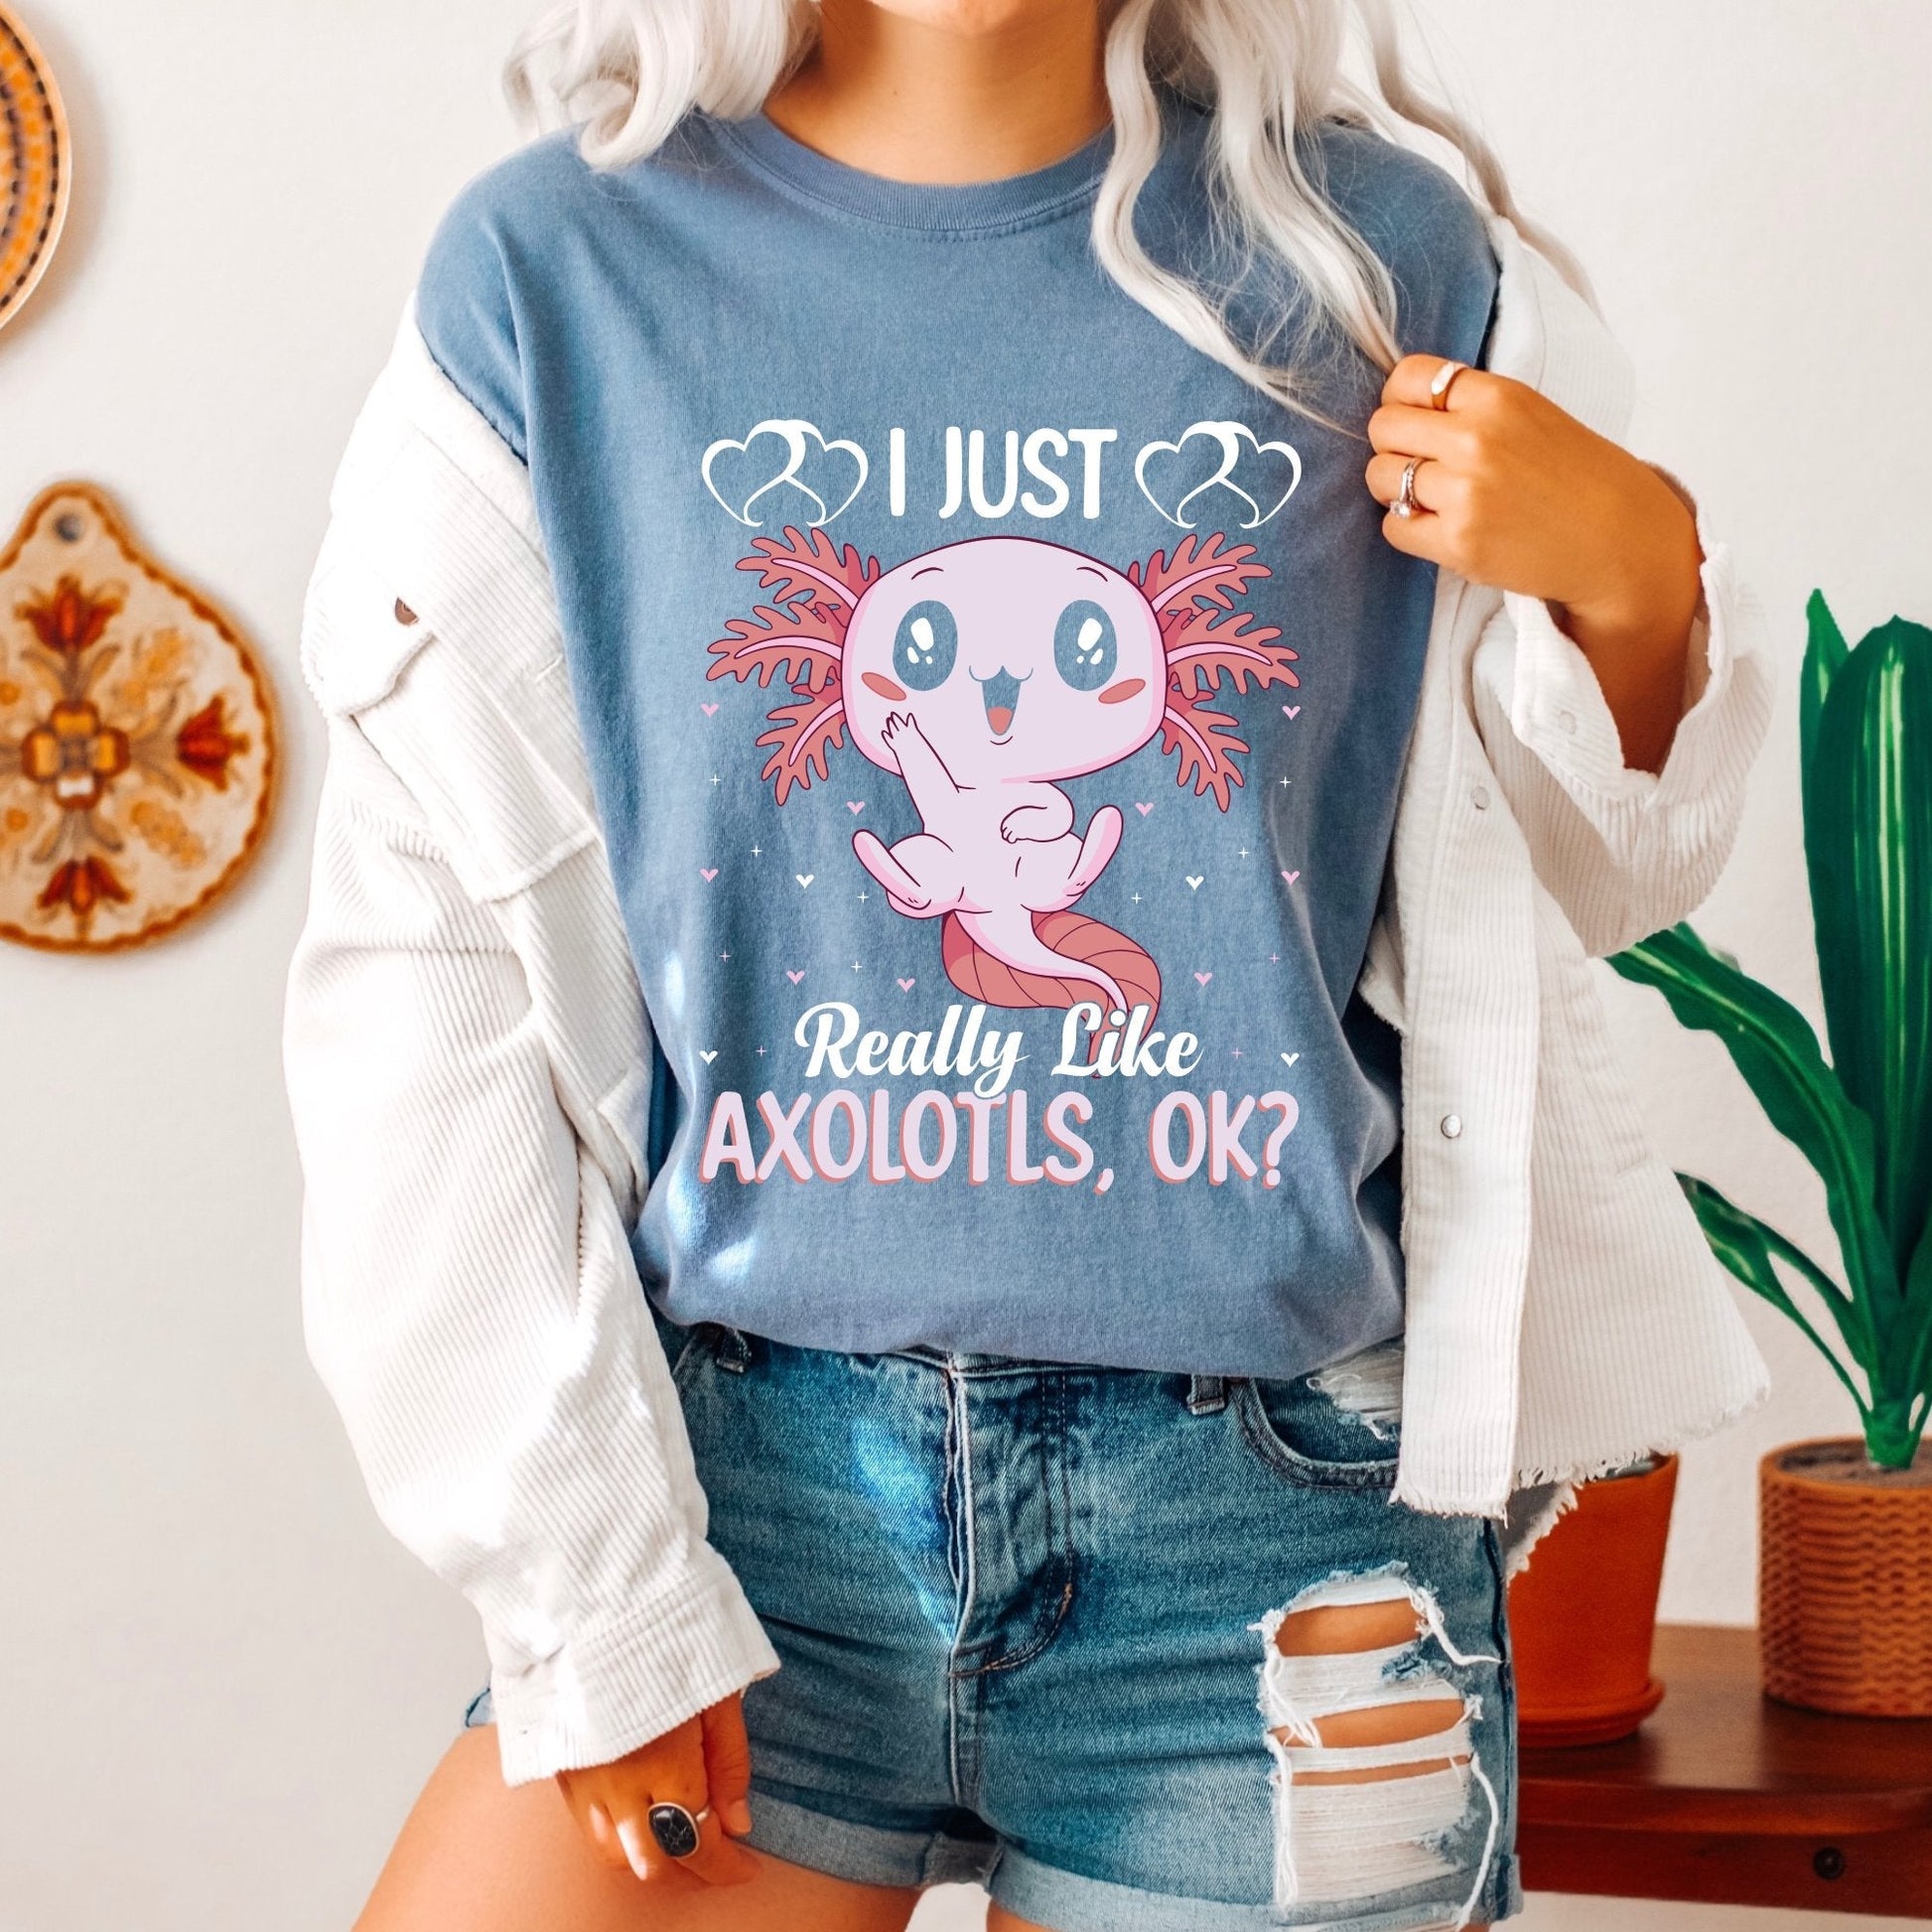 I Just really like Axolotls ok T-Shirt, Axolotl Gifts, Axolotl